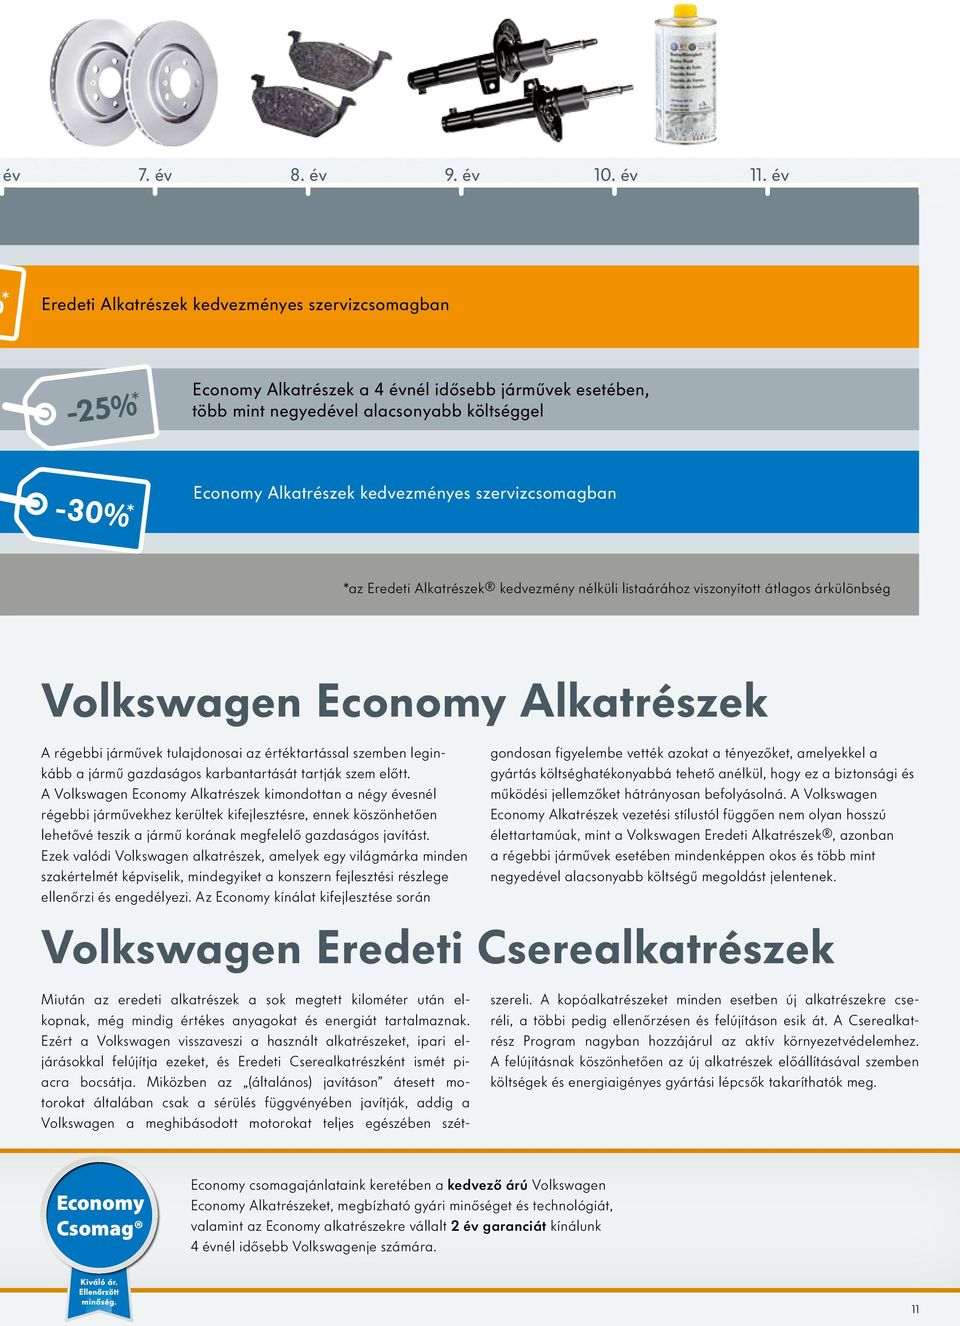 kedvezményes szervizcsomagban *az Eredeti Alkatrészek kedvezmény nélküli listaárához viszonyított átlagos árkülönbség Volkswagen Economy Alkatrészek A régebbi járművek tulajdonosai az értéktartással